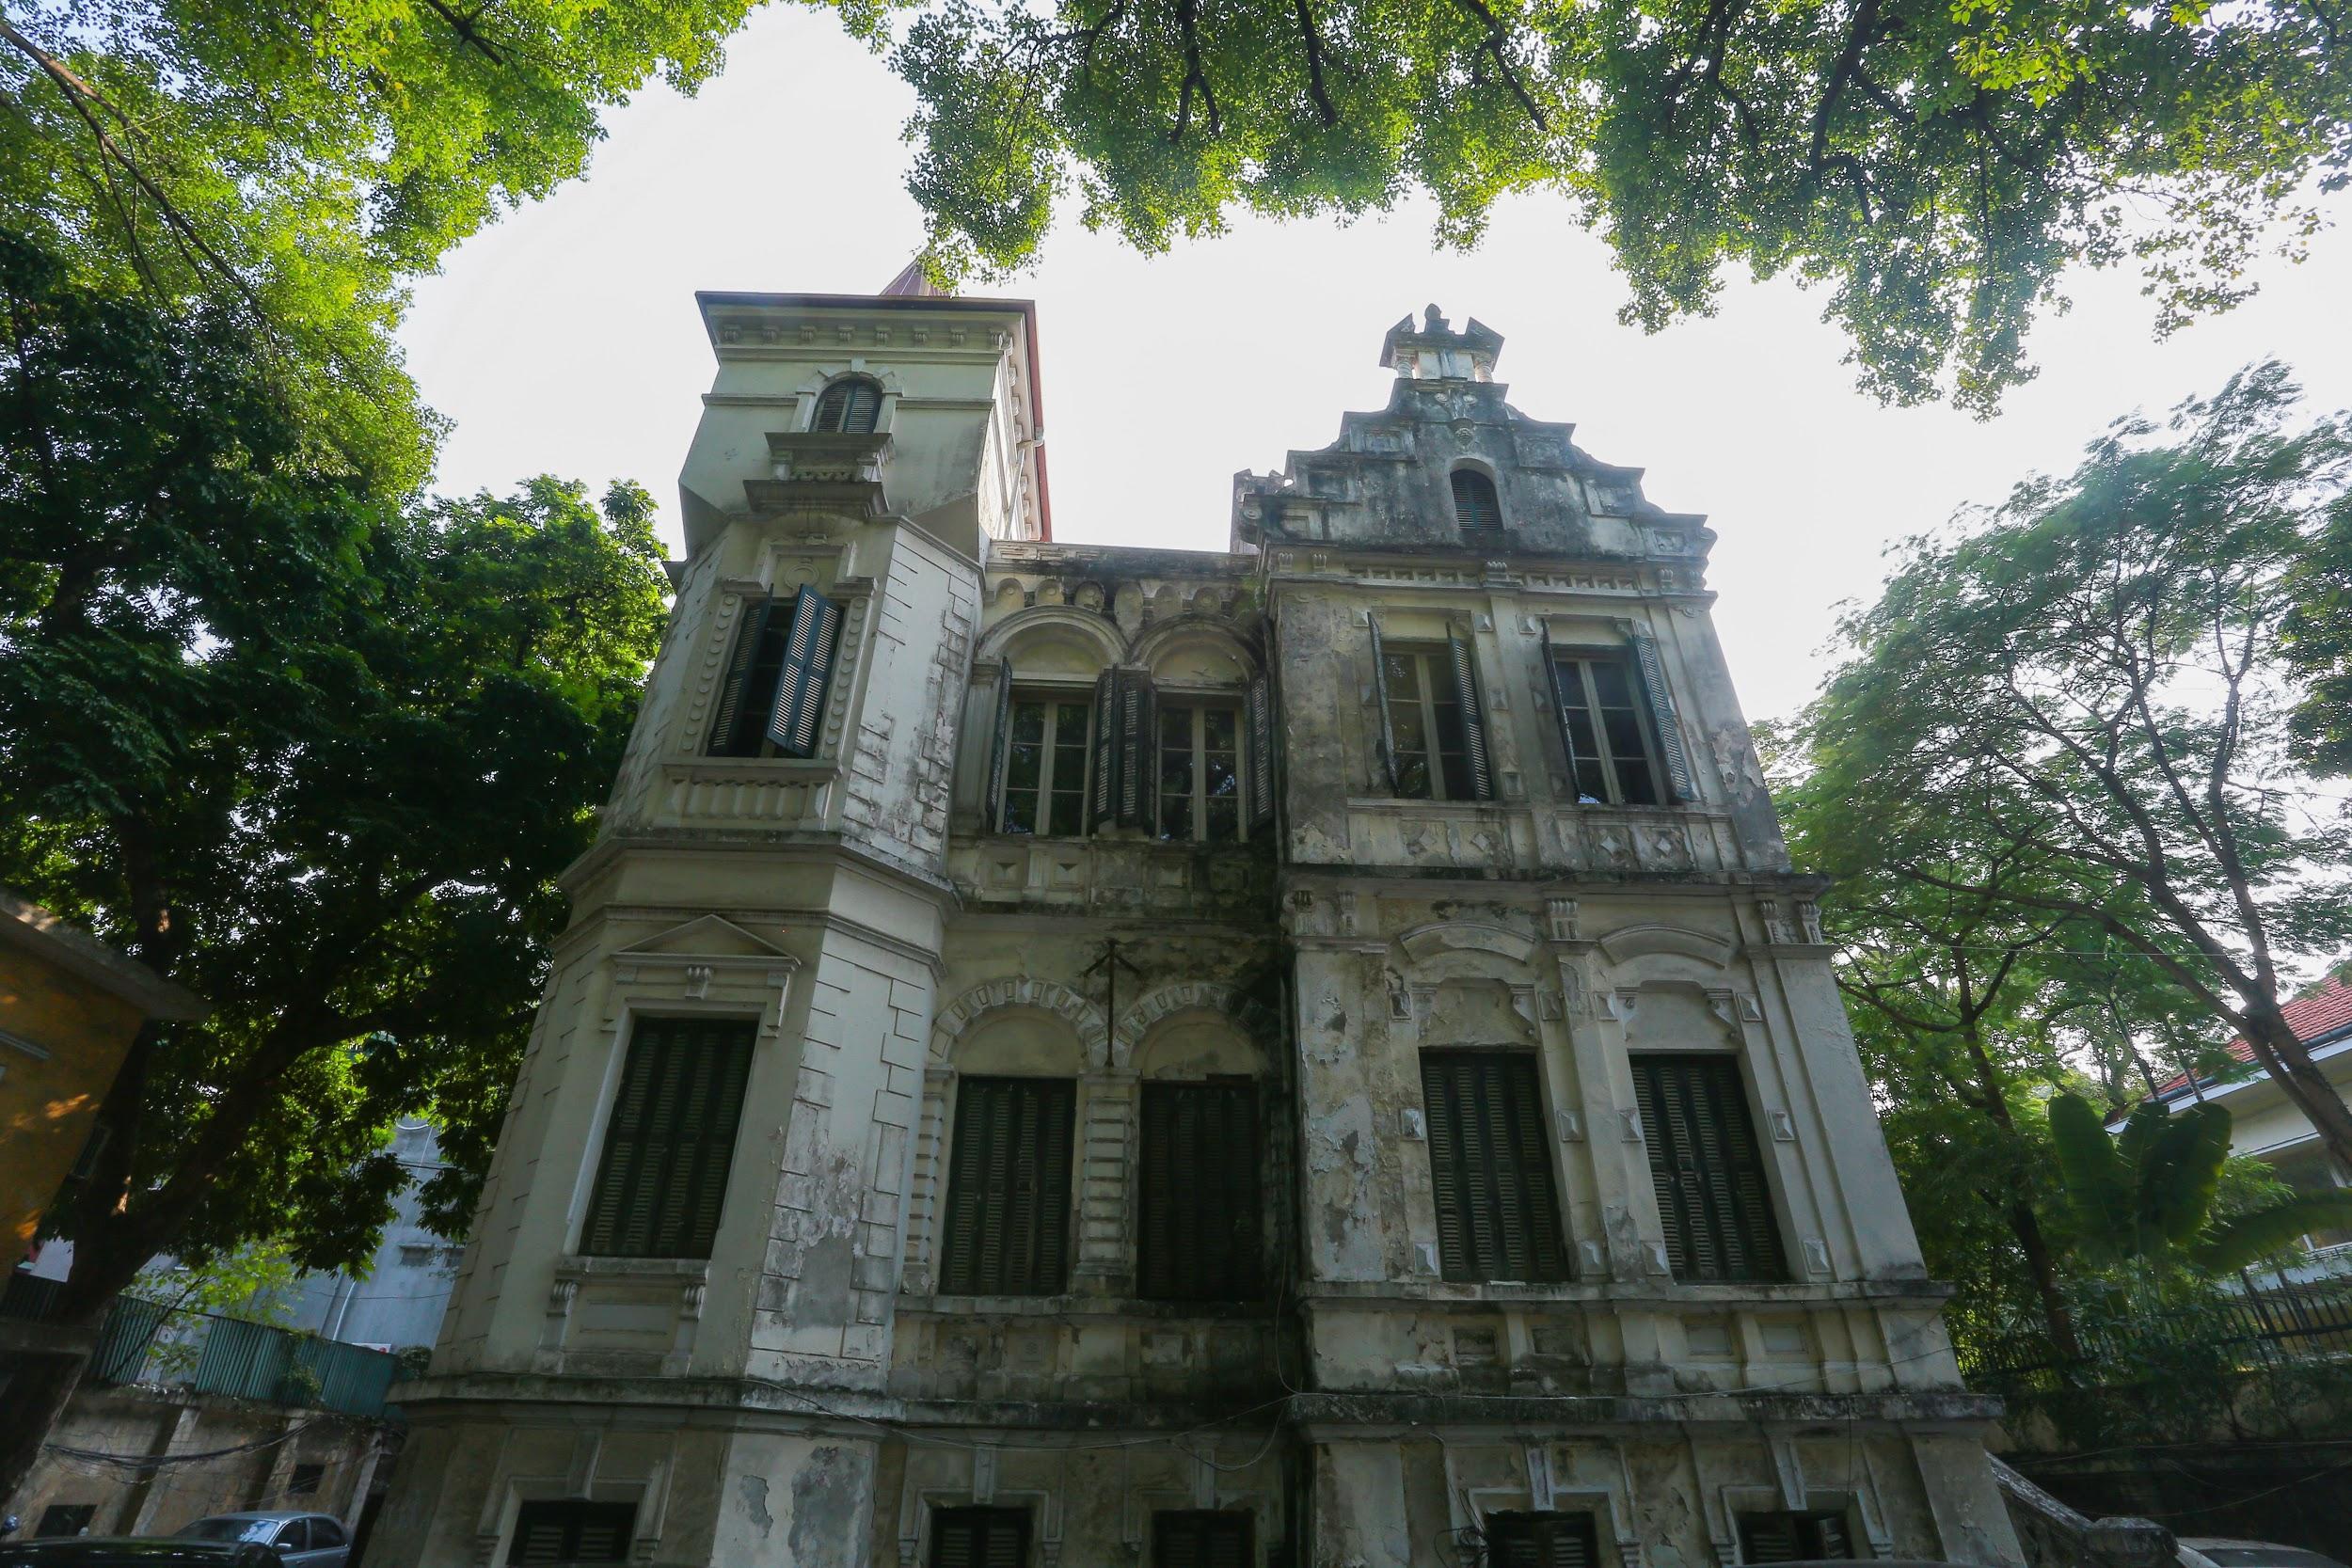 Chiêm ngưỡng dinh thự Pháp cổ từng là nơi ở của vua Bảo Đại tại Hà Nội - Ảnh 1.